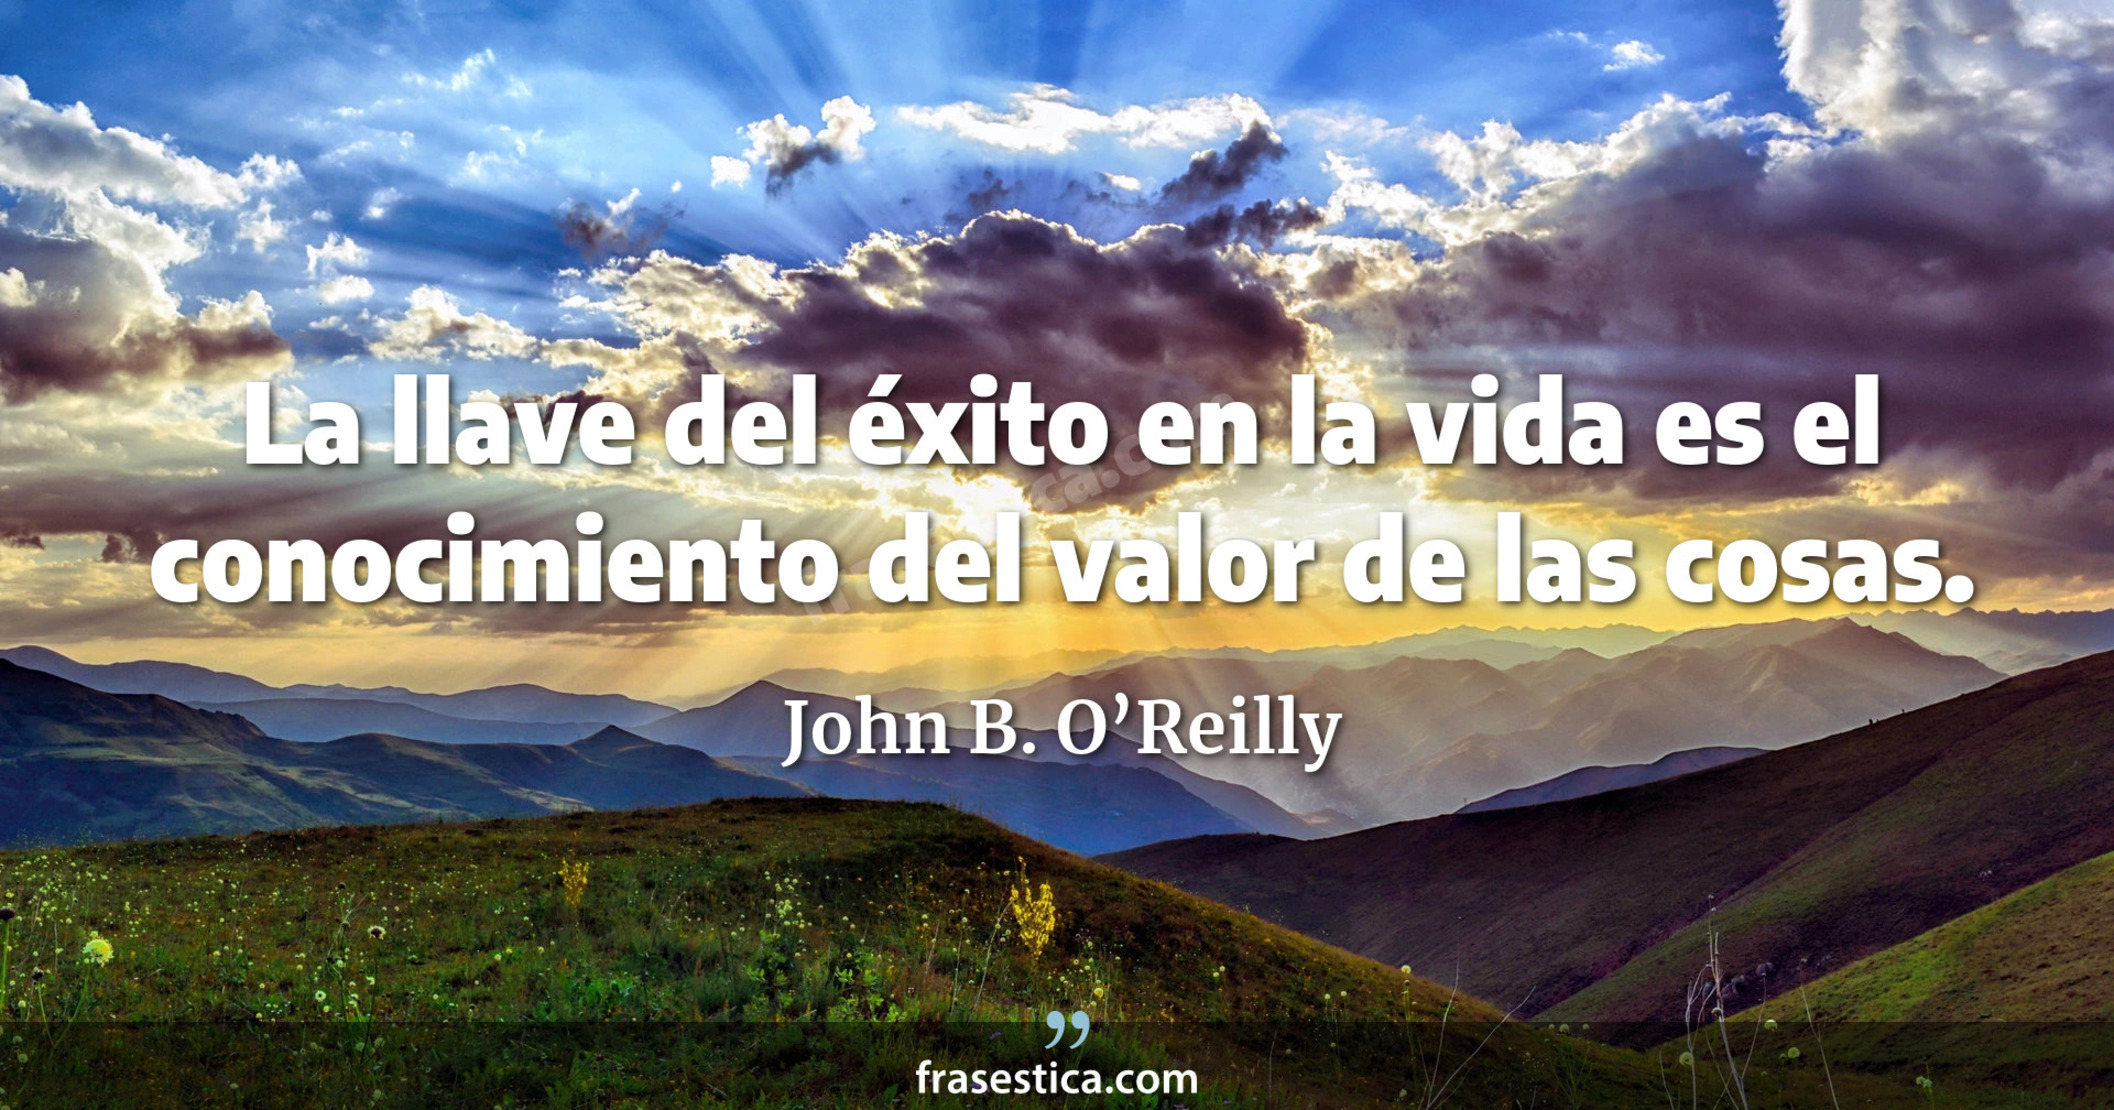 La llave del éxito en la vida es el conocimiento del valor de las cosas. - John B. O’Reilly